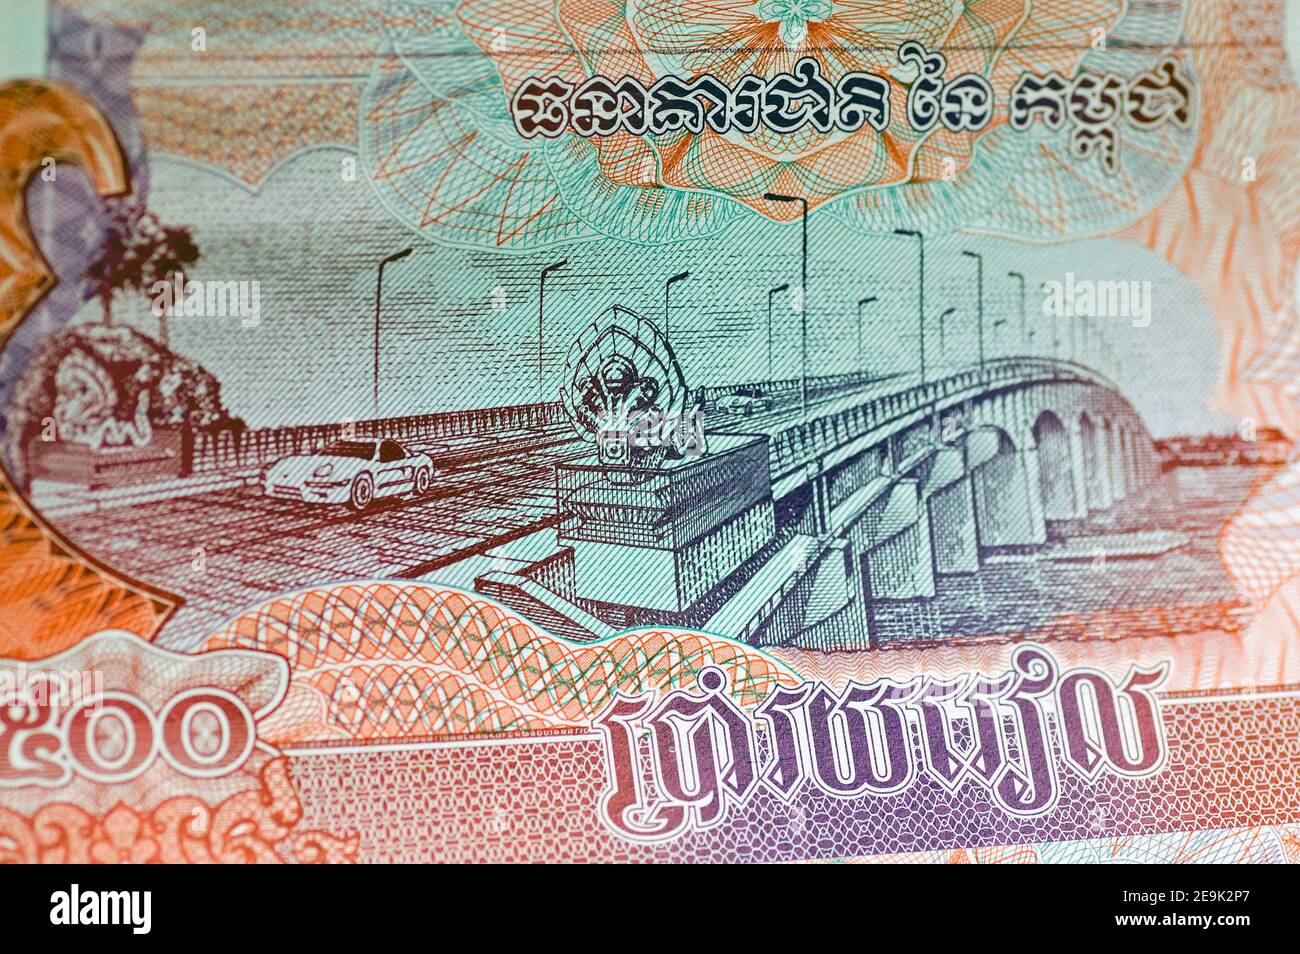 Kambodschanische Banknote für 500 Riel zeigt ein Auto, das über die Kizuna Brücke über den Mekong Fluss in Kampong Cham fährt. Gebrauchte Banknote in einem Winkel betrachtet Stockfoto